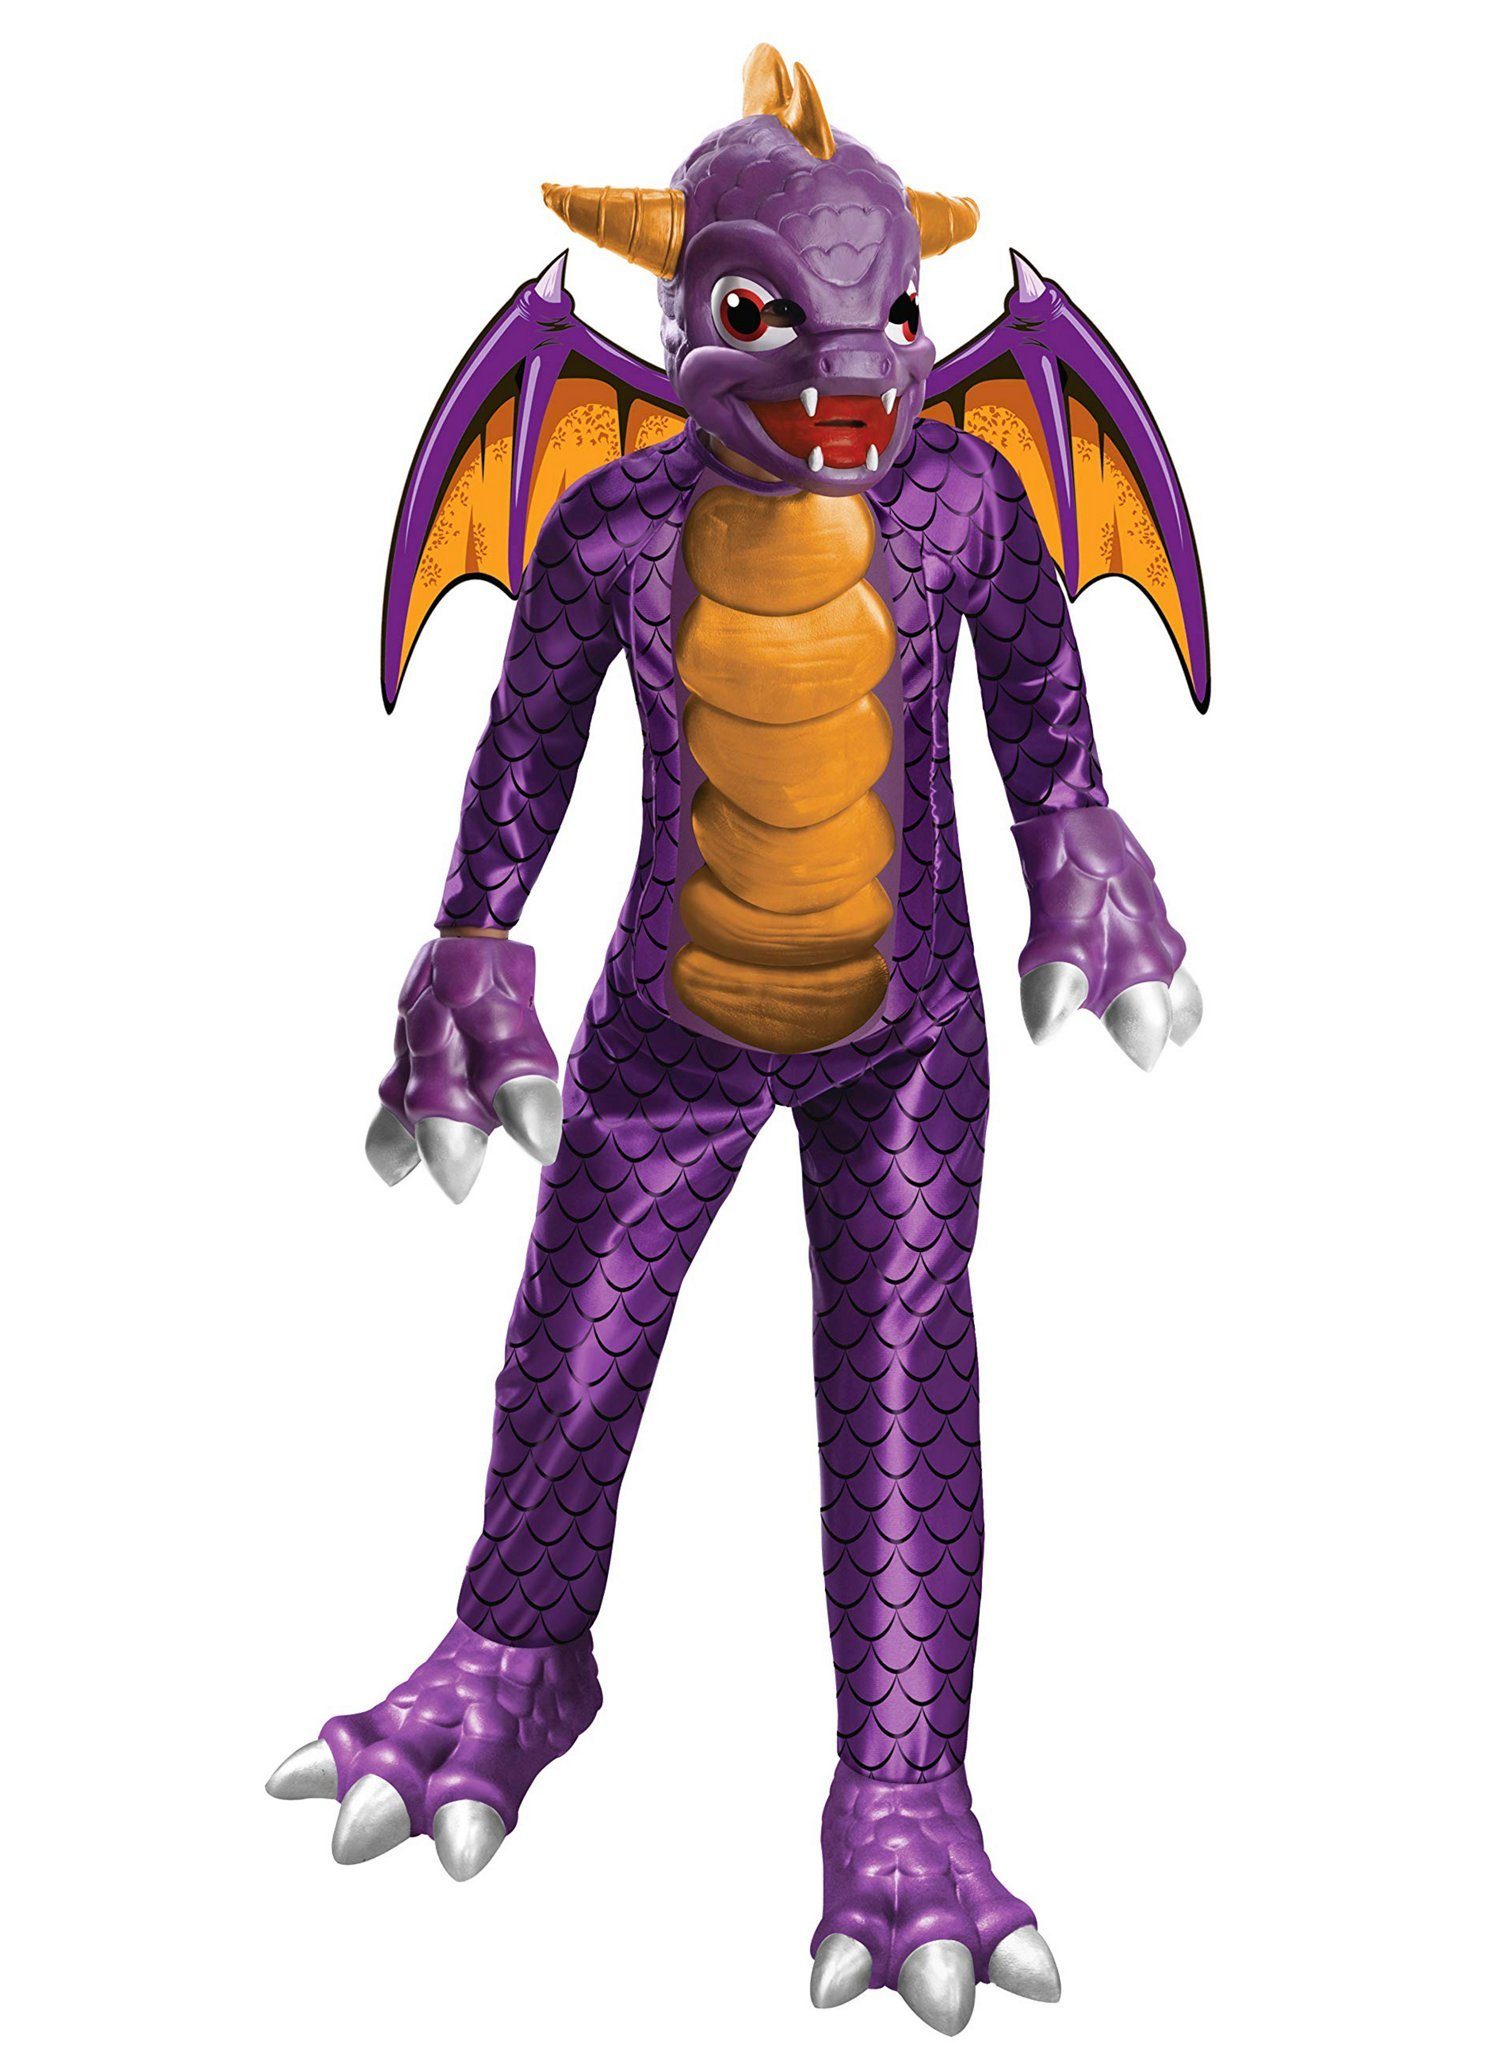 Metamorph Kostüm Skylanders - Spyro Kostüm für Kinder, Macht Dich zum Drachen Spyro aus dem beliebten Videogame!